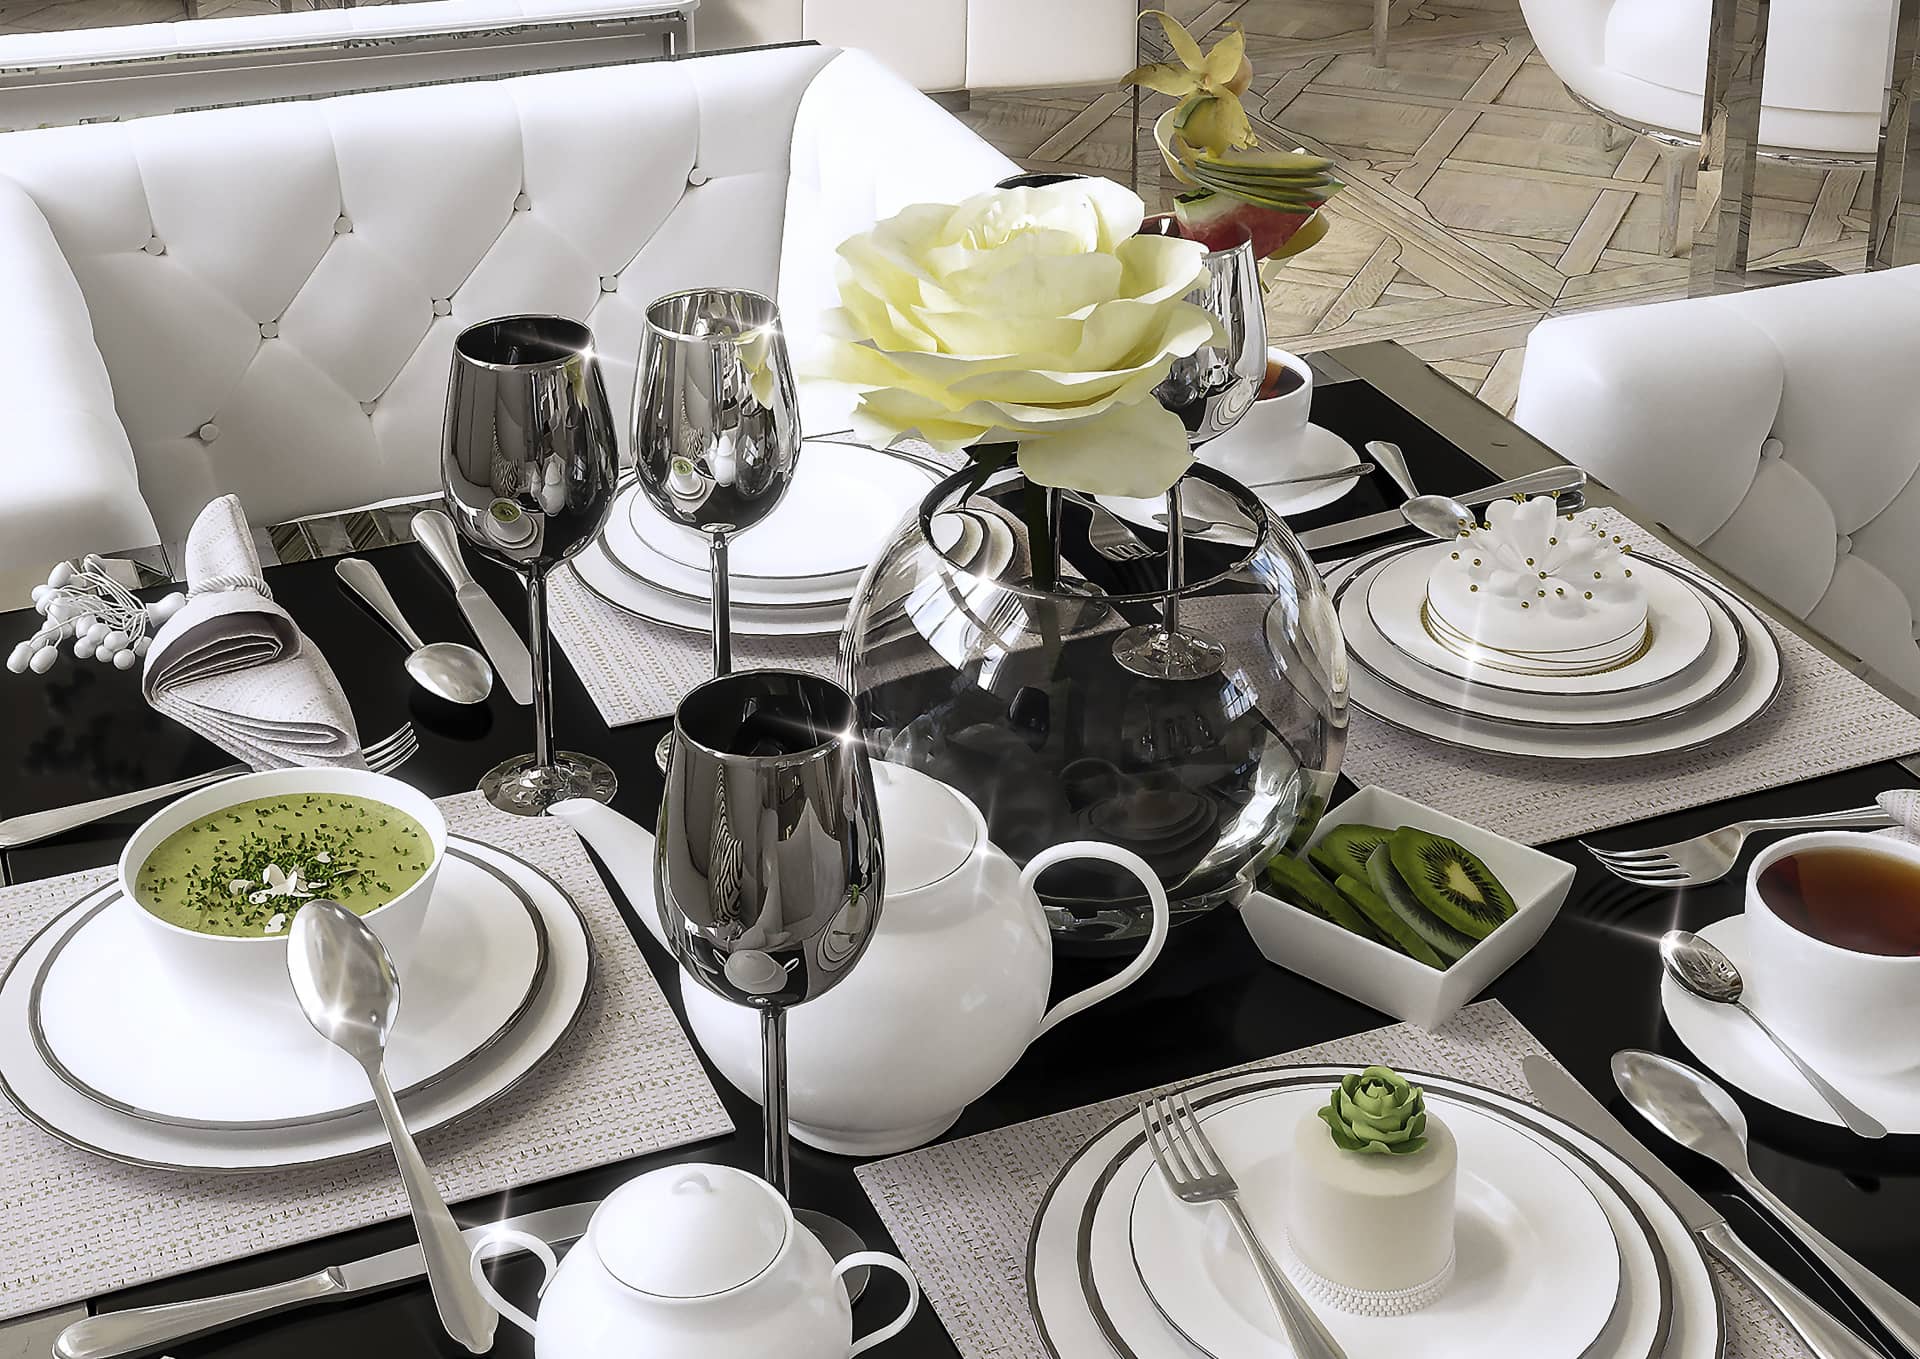 Столы украшены строго, белая посуда с чёрной каёмкой